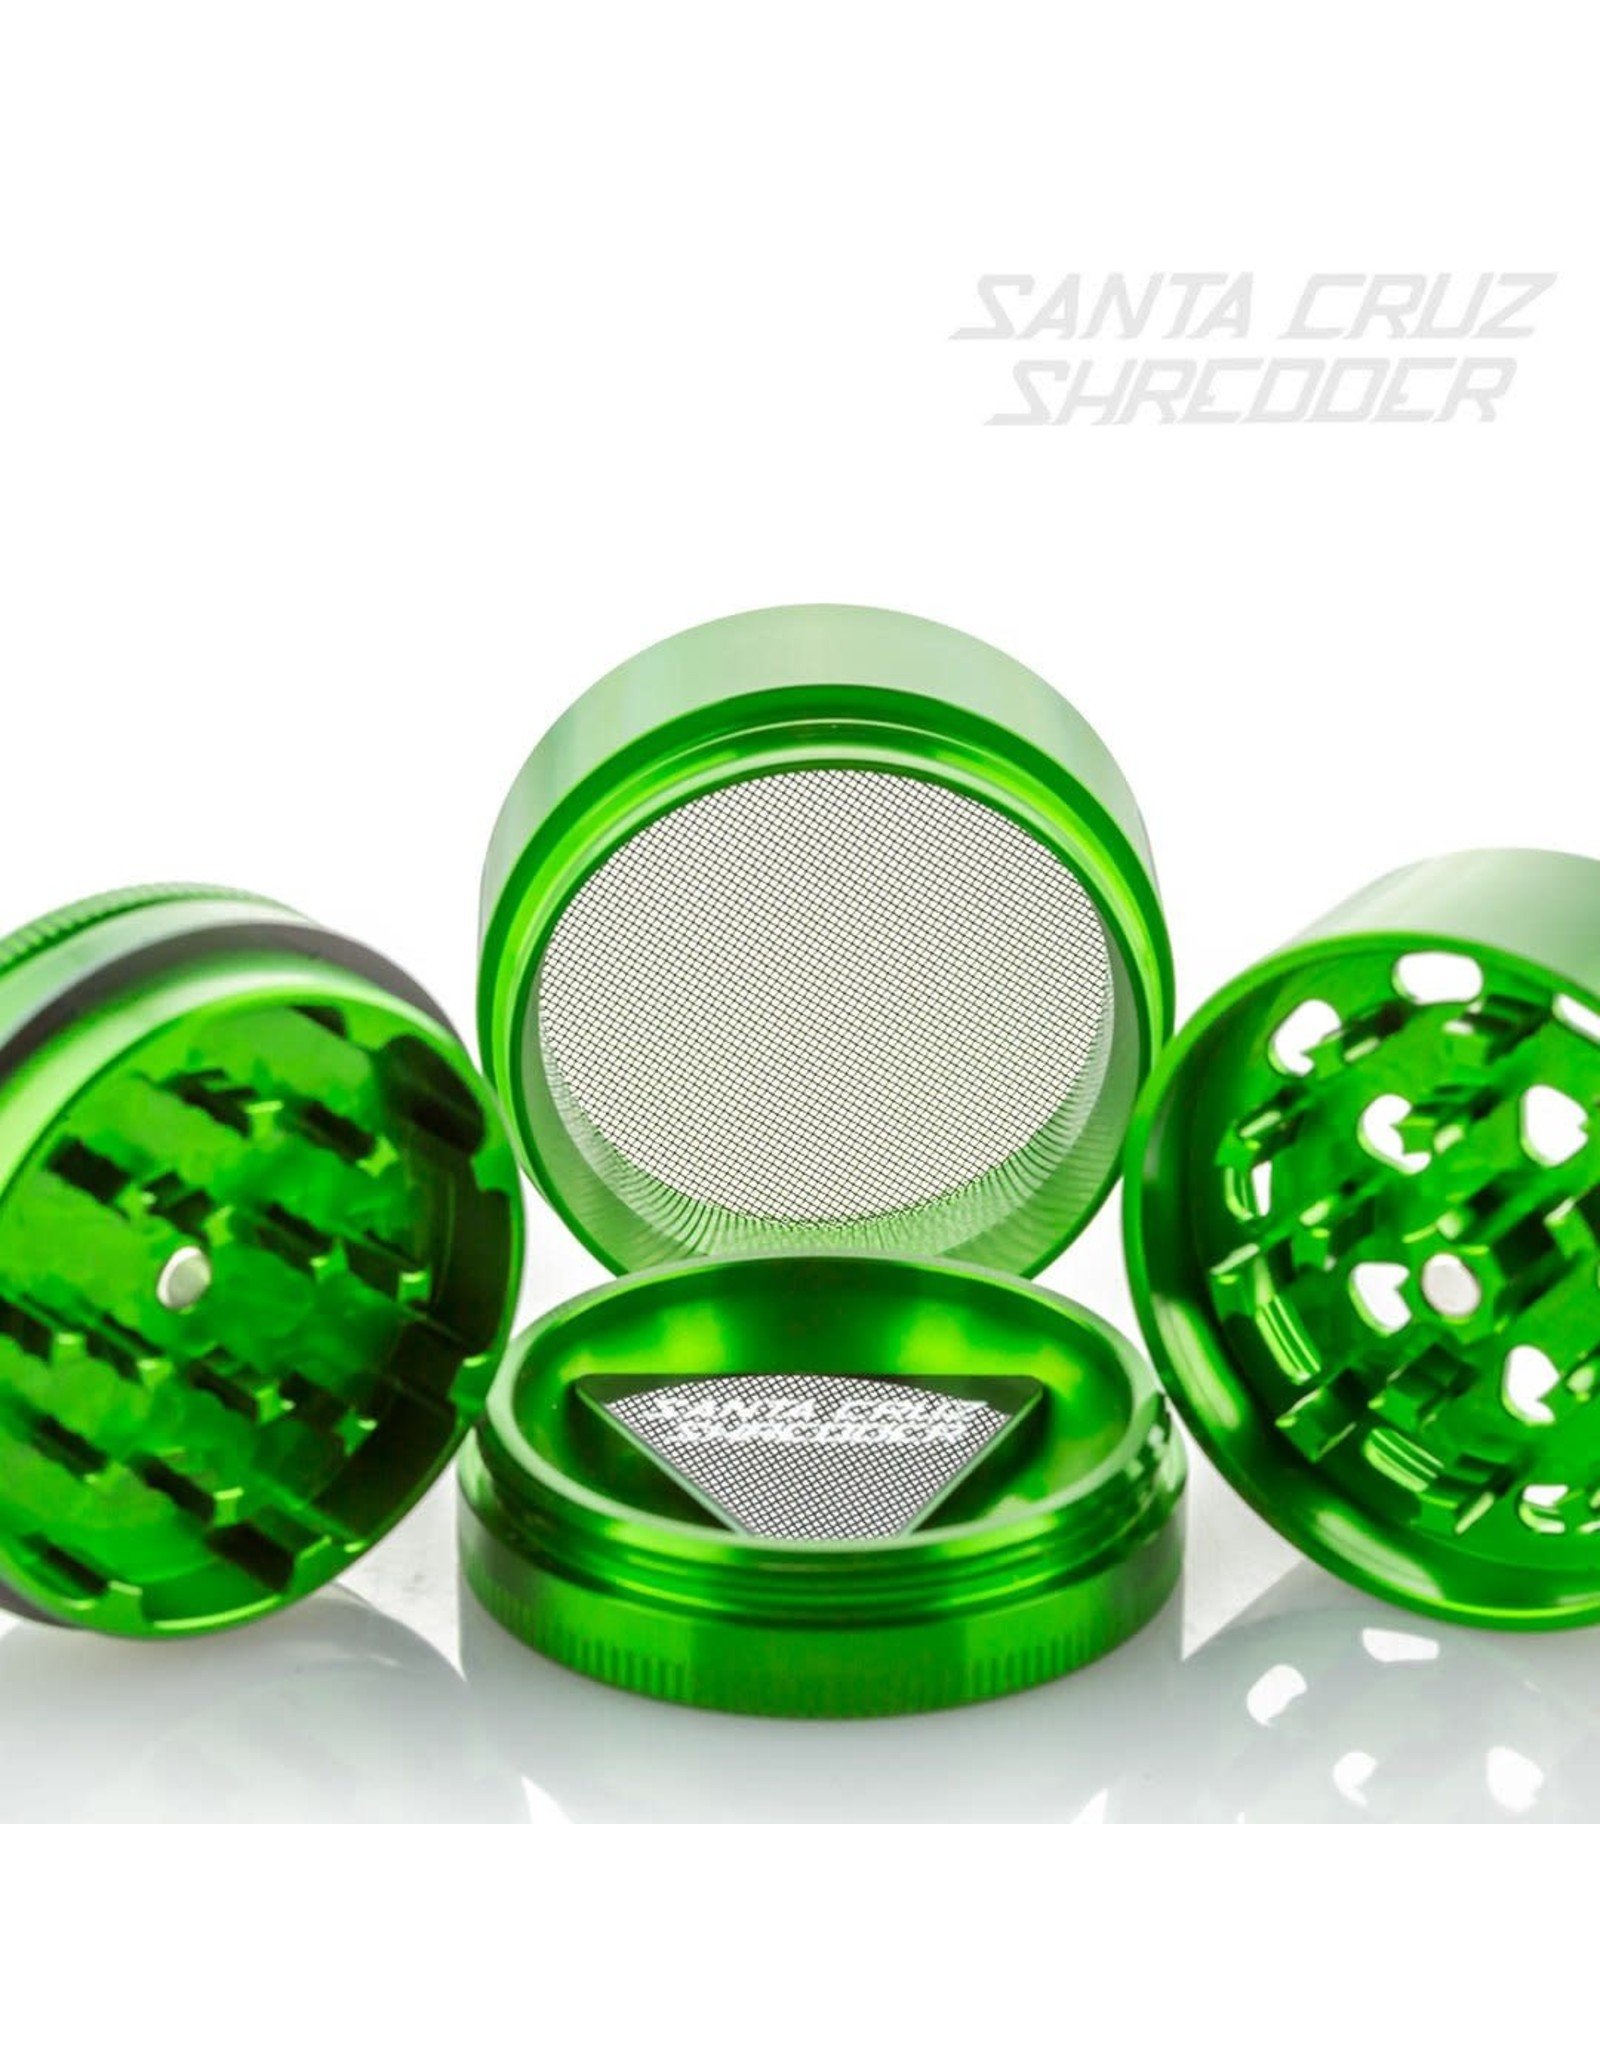 Santa Cruz Shredder Santa Cruz Shredder Medium 4Pc Green